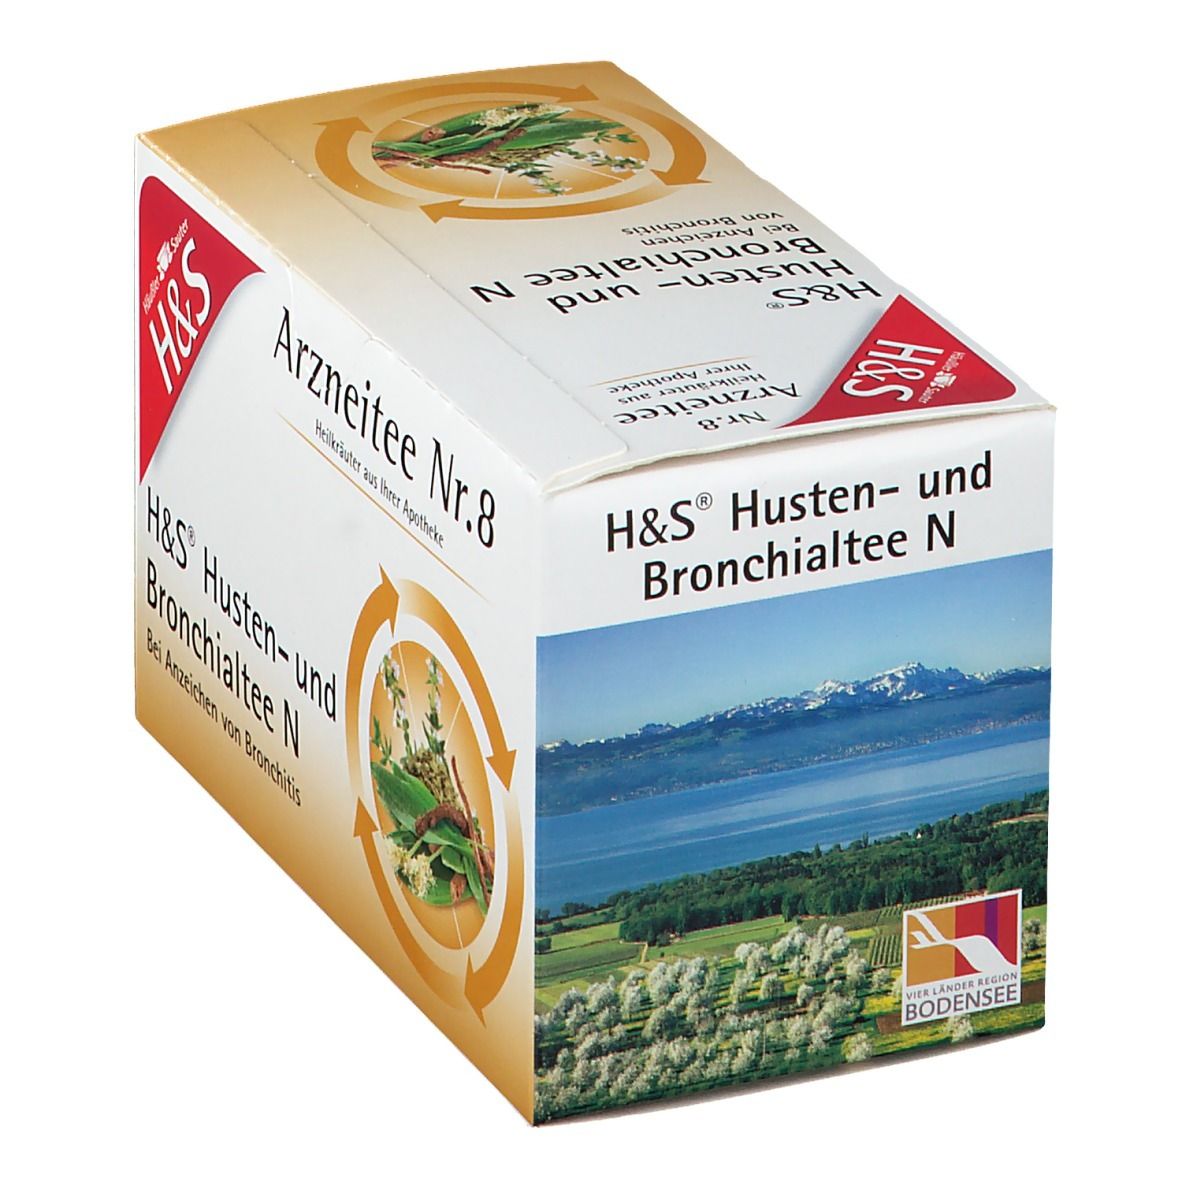 H&S Husten- und Bronchialtee N Nr. 8